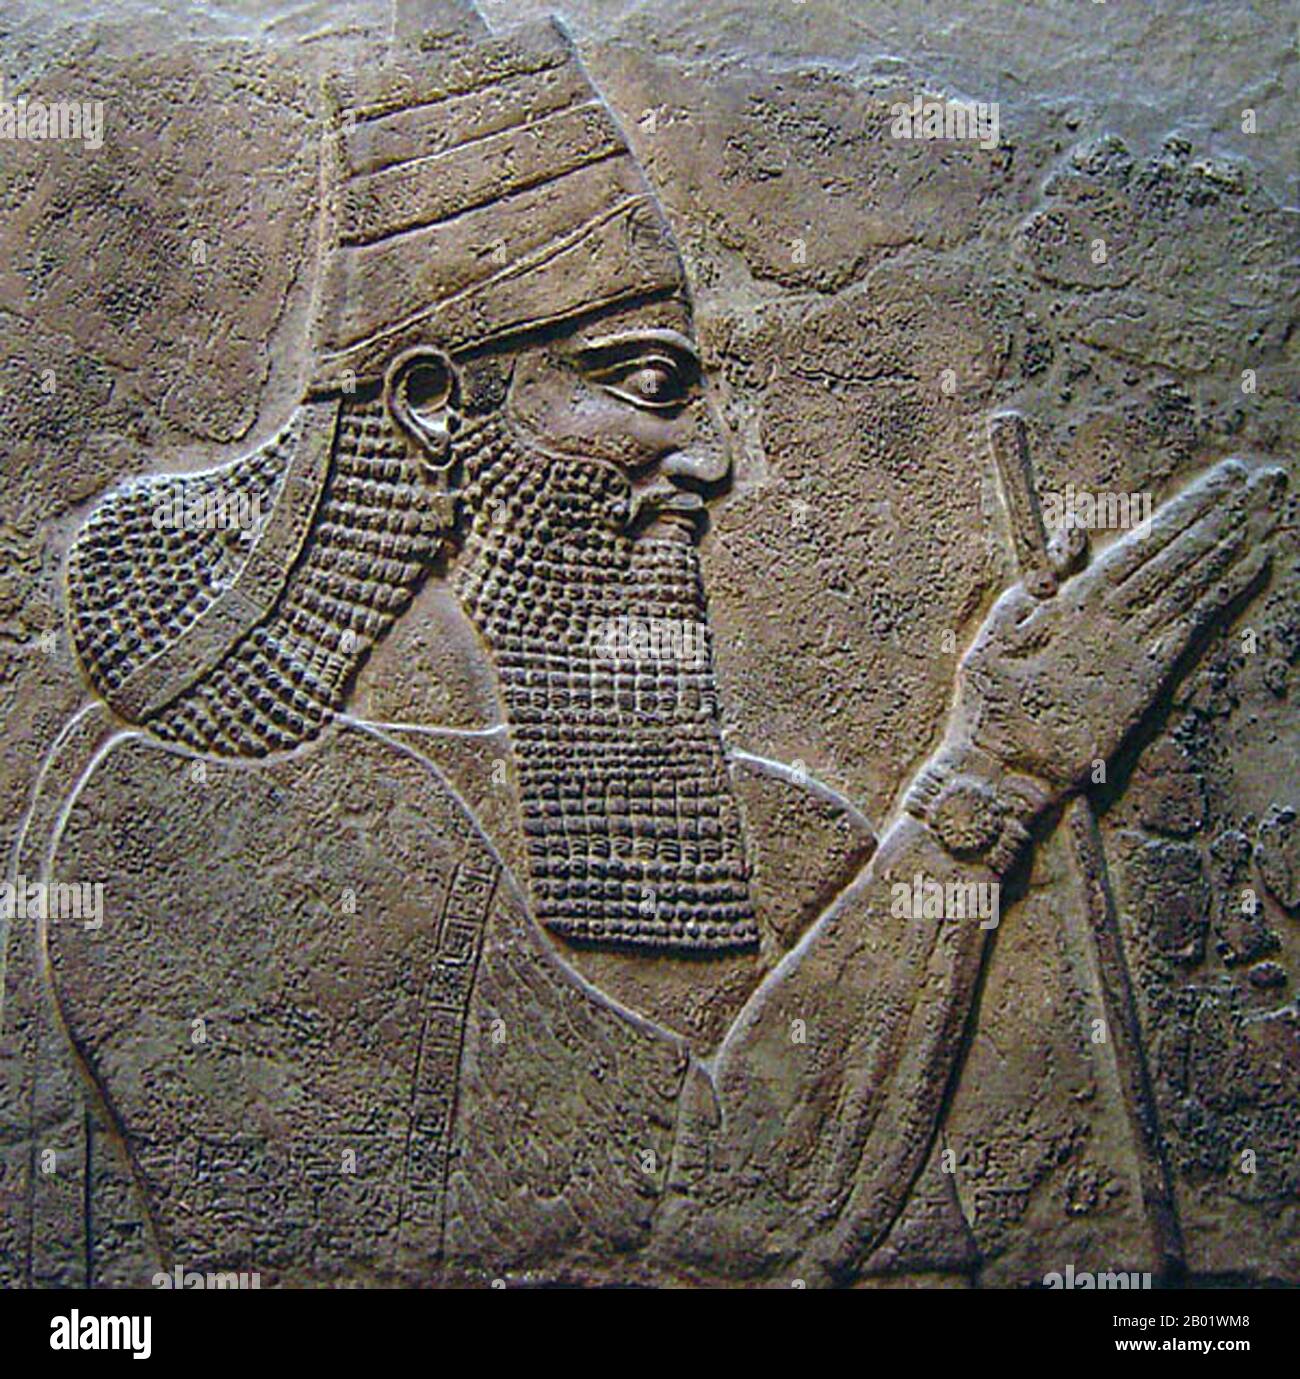 Irak: Tiglath-Pileser III. (Ca. 795-727 v. Chr.), König von Assyrien (R. 745-727 v. Chr.), dargestellt in einer Stele von den Mauern seines Palastes, ca. 728 v. Chr. Tiglath-Pileser III. War im 8. Jahrhundert v. Chr. ein prominenter König von Assyrien und gilt weithin als Gründer des Neo-Assyrischen Reiches. Tiglath-Pileser III. Eroberte während eines Bürgerkriegs den Assyrischen Thron und tötete die königliche Familie. Er nahm weitreichende Änderungen an der assyrischen Regierung vor und verbesserte deren Effizienz und Sicherheit erheblich. Assyrische Truppen wurden zu einer stehenden Armee und er unterwarf Babylonien einer Tribut. Stockfoto